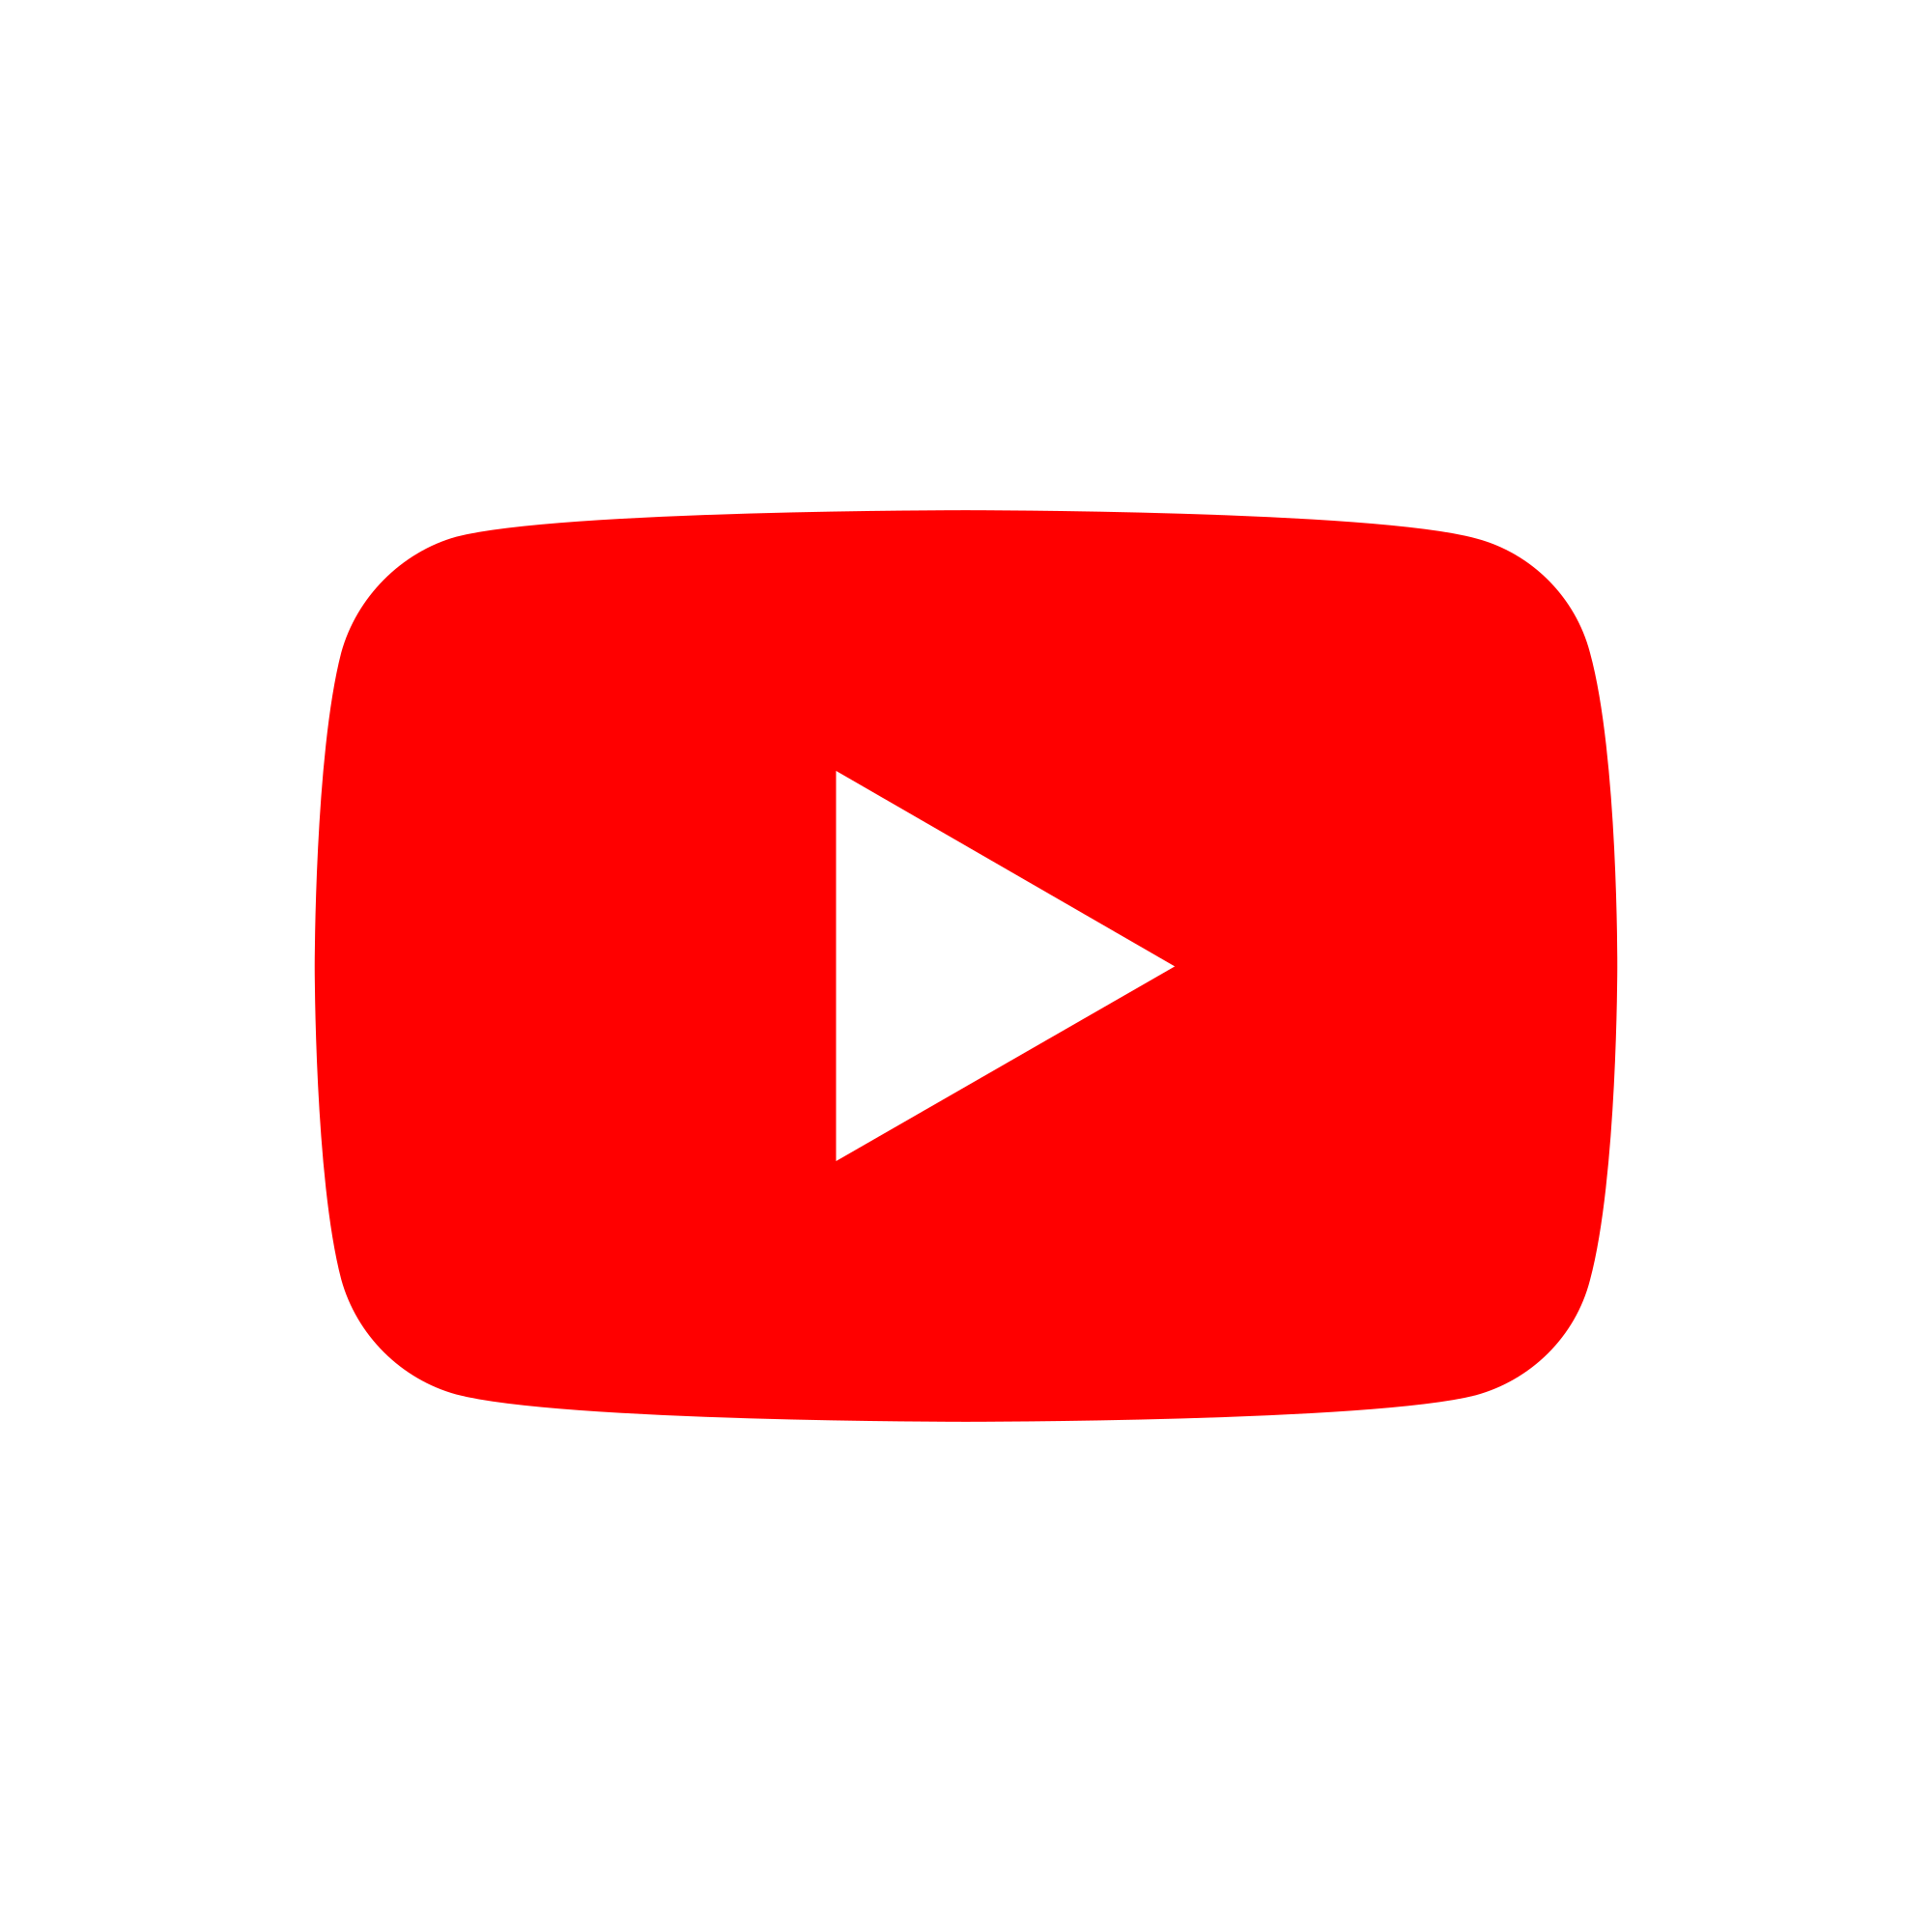 Pas de YouTube Rewind cette année, mais la plateforme dévoile ses contenus les plus regardés en 2020